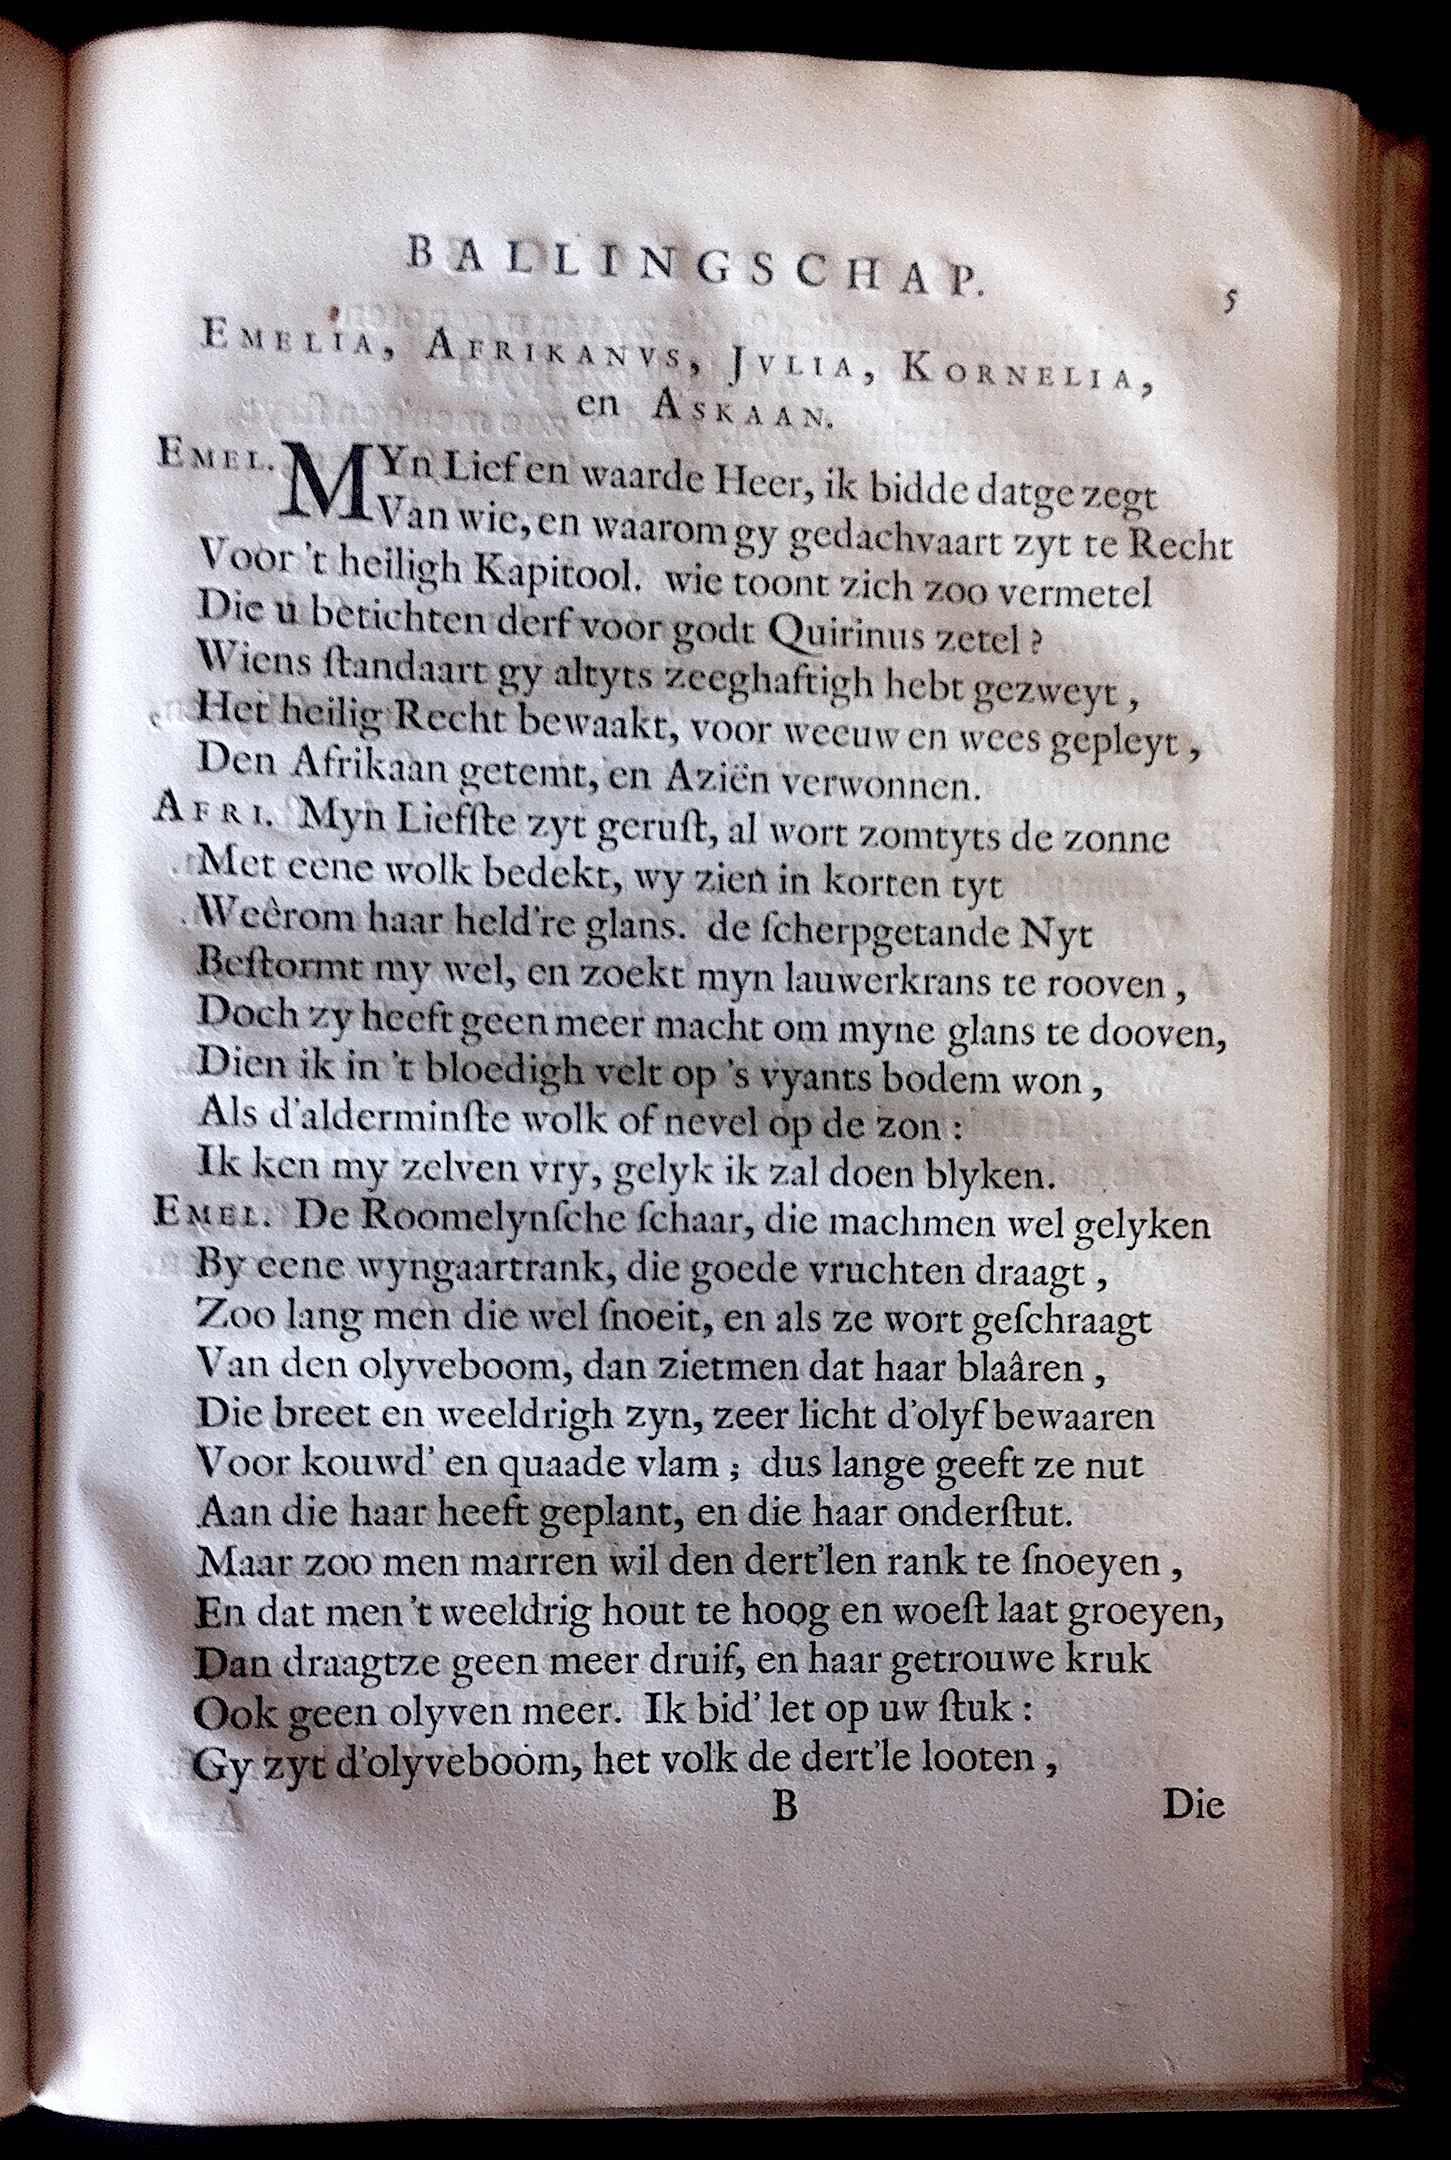 BoccardScipioFolio1658p05